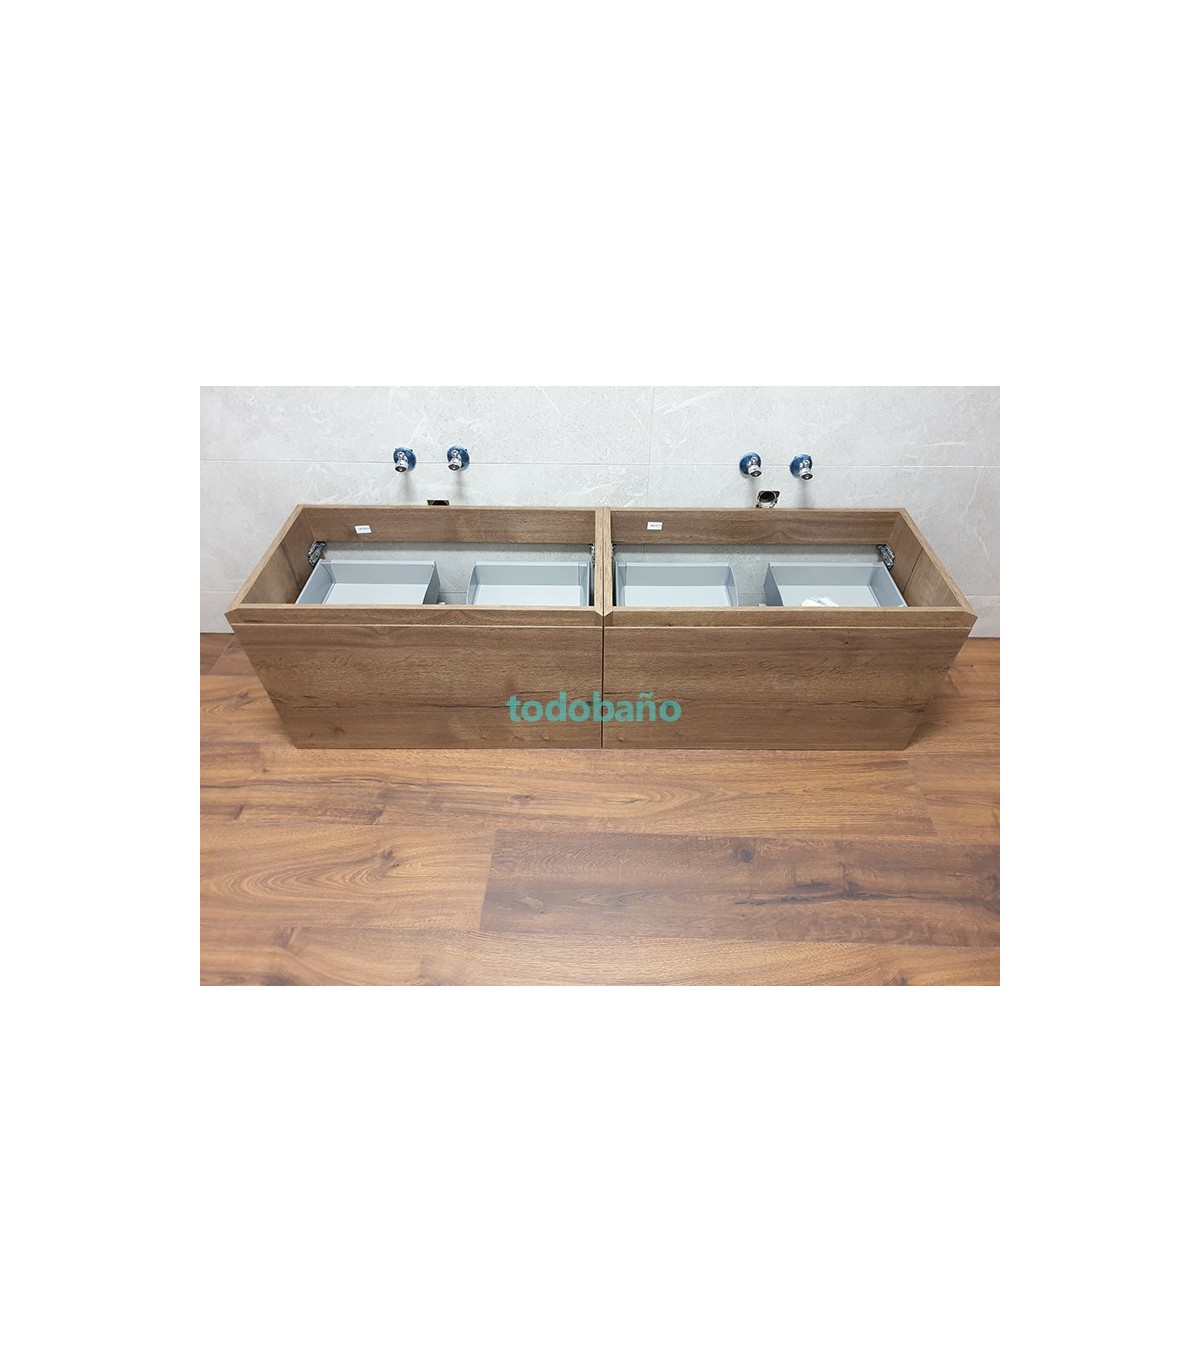 ▷ Muebles de Doble Seno 【 ✓ Soluciones de Baño】 - FERROLAN